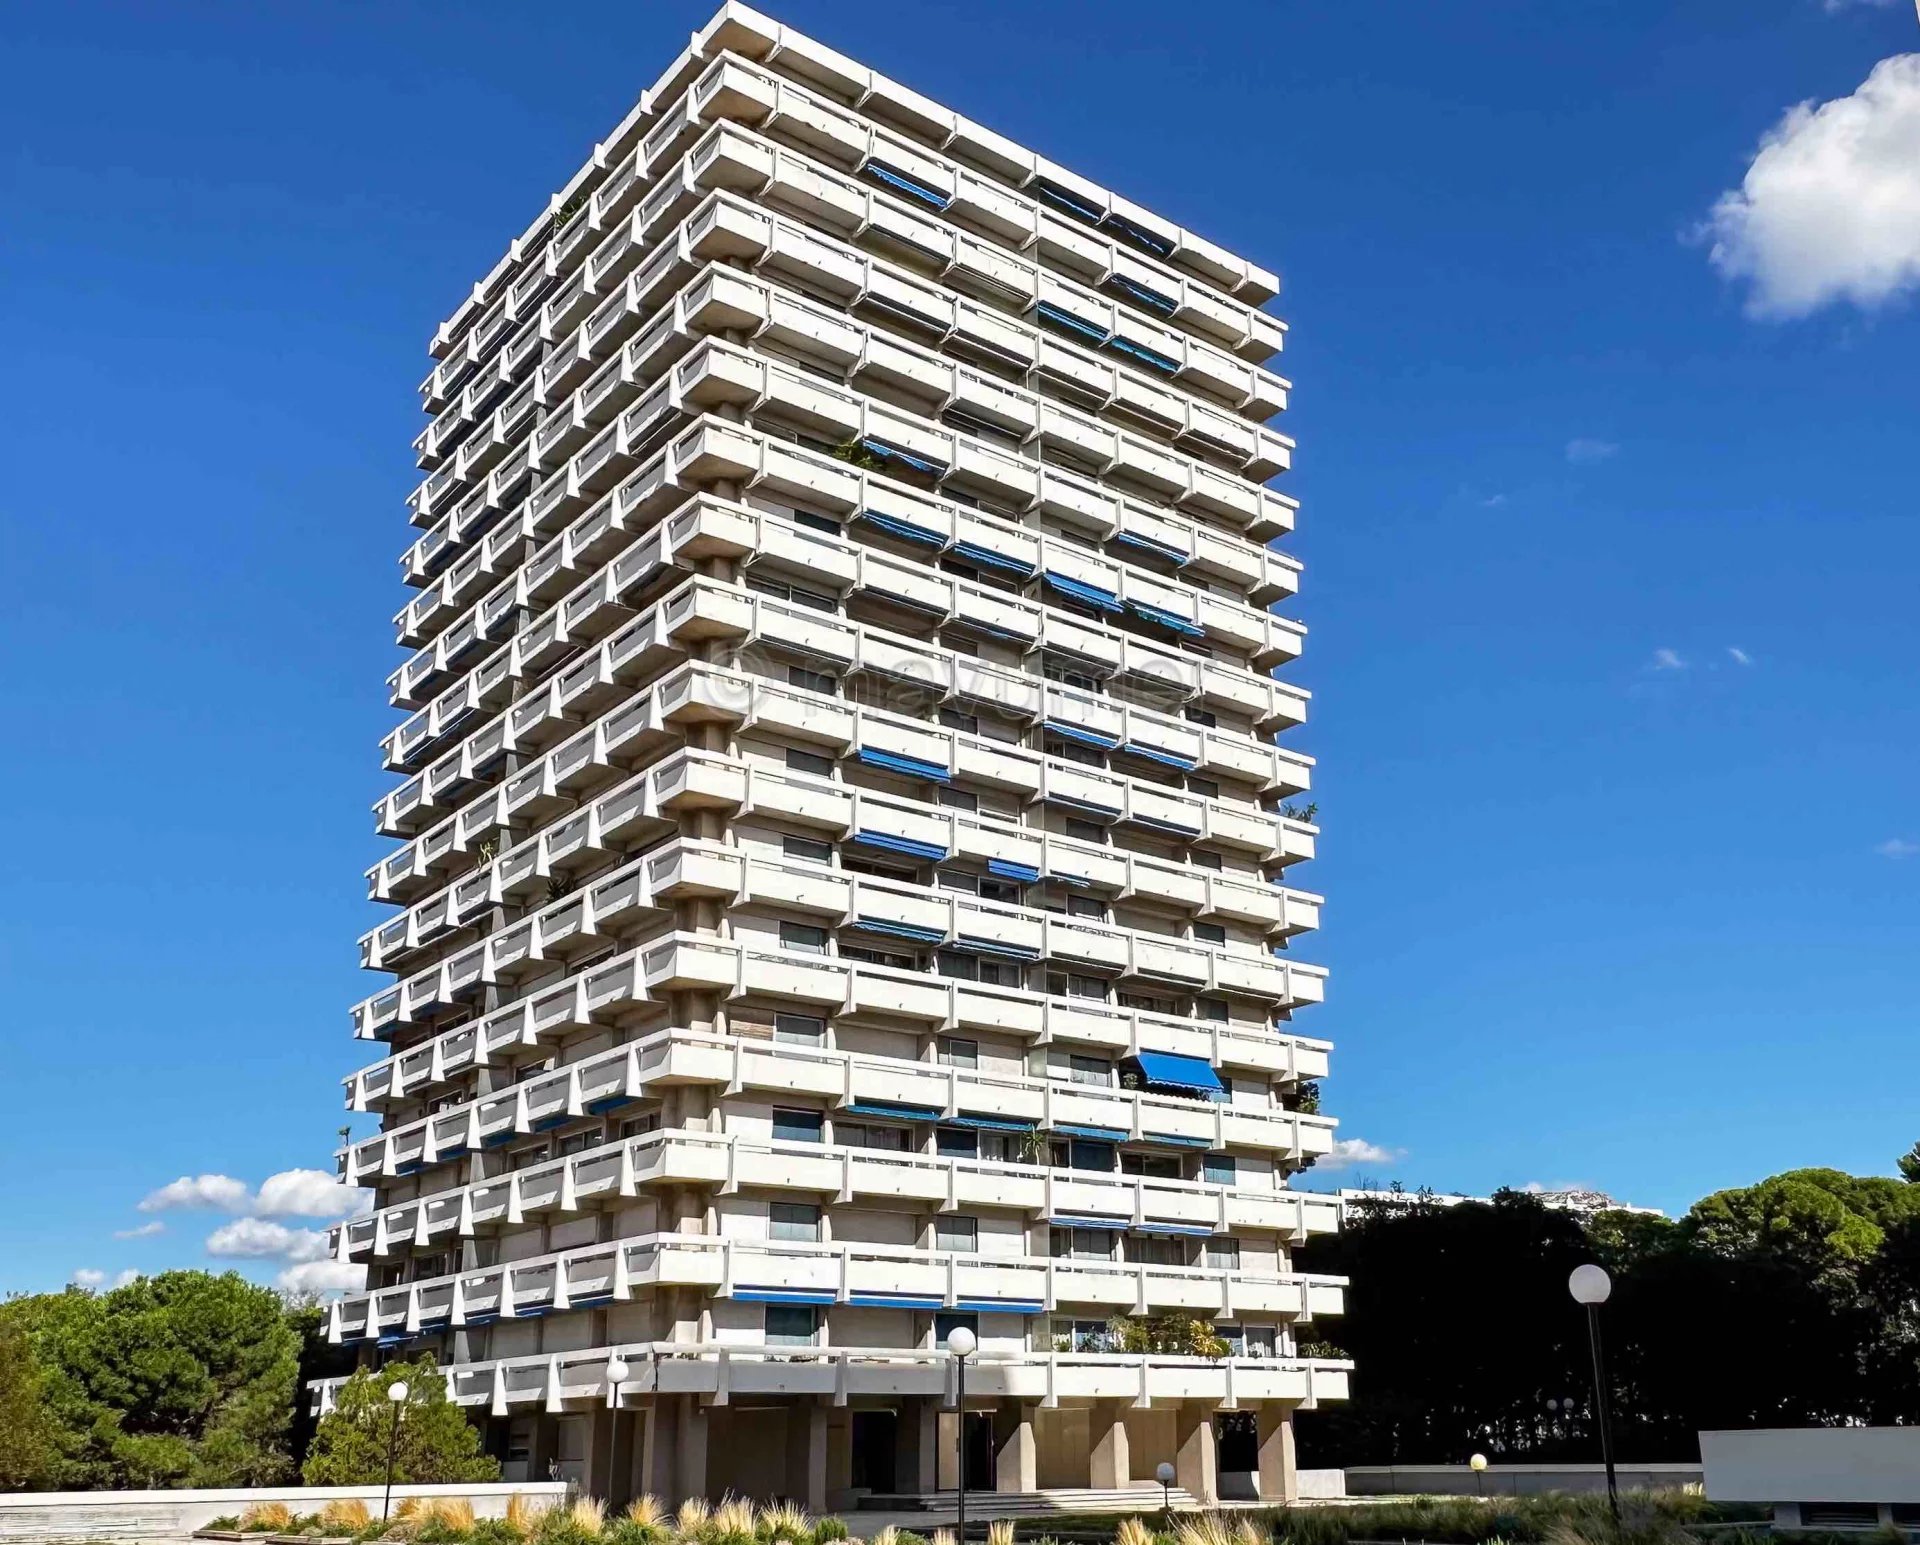 Sale Apartment - Marseille 9ème Le Cabot